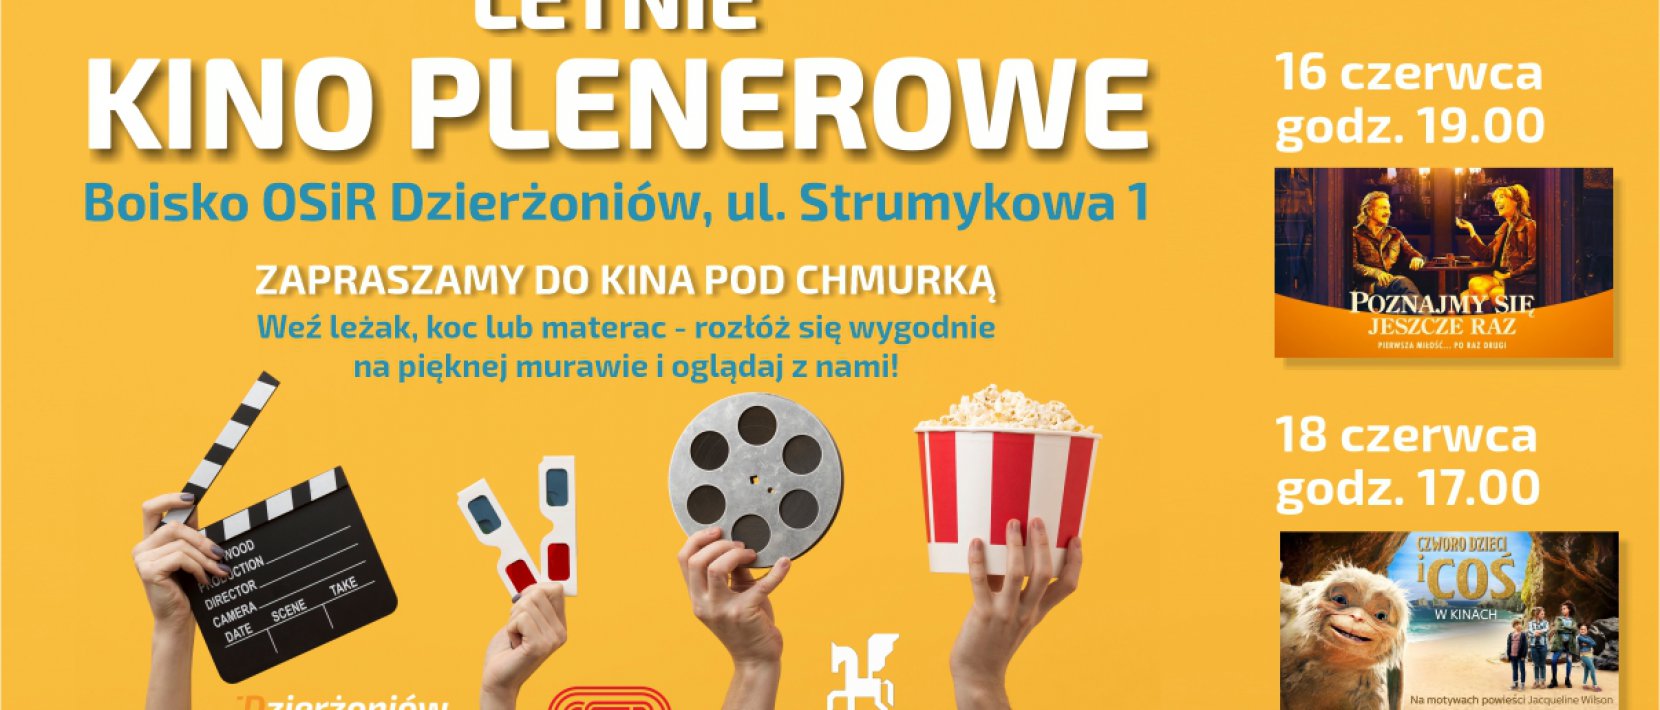 Plakat, na żółtym tle napis Kino Plenerowe